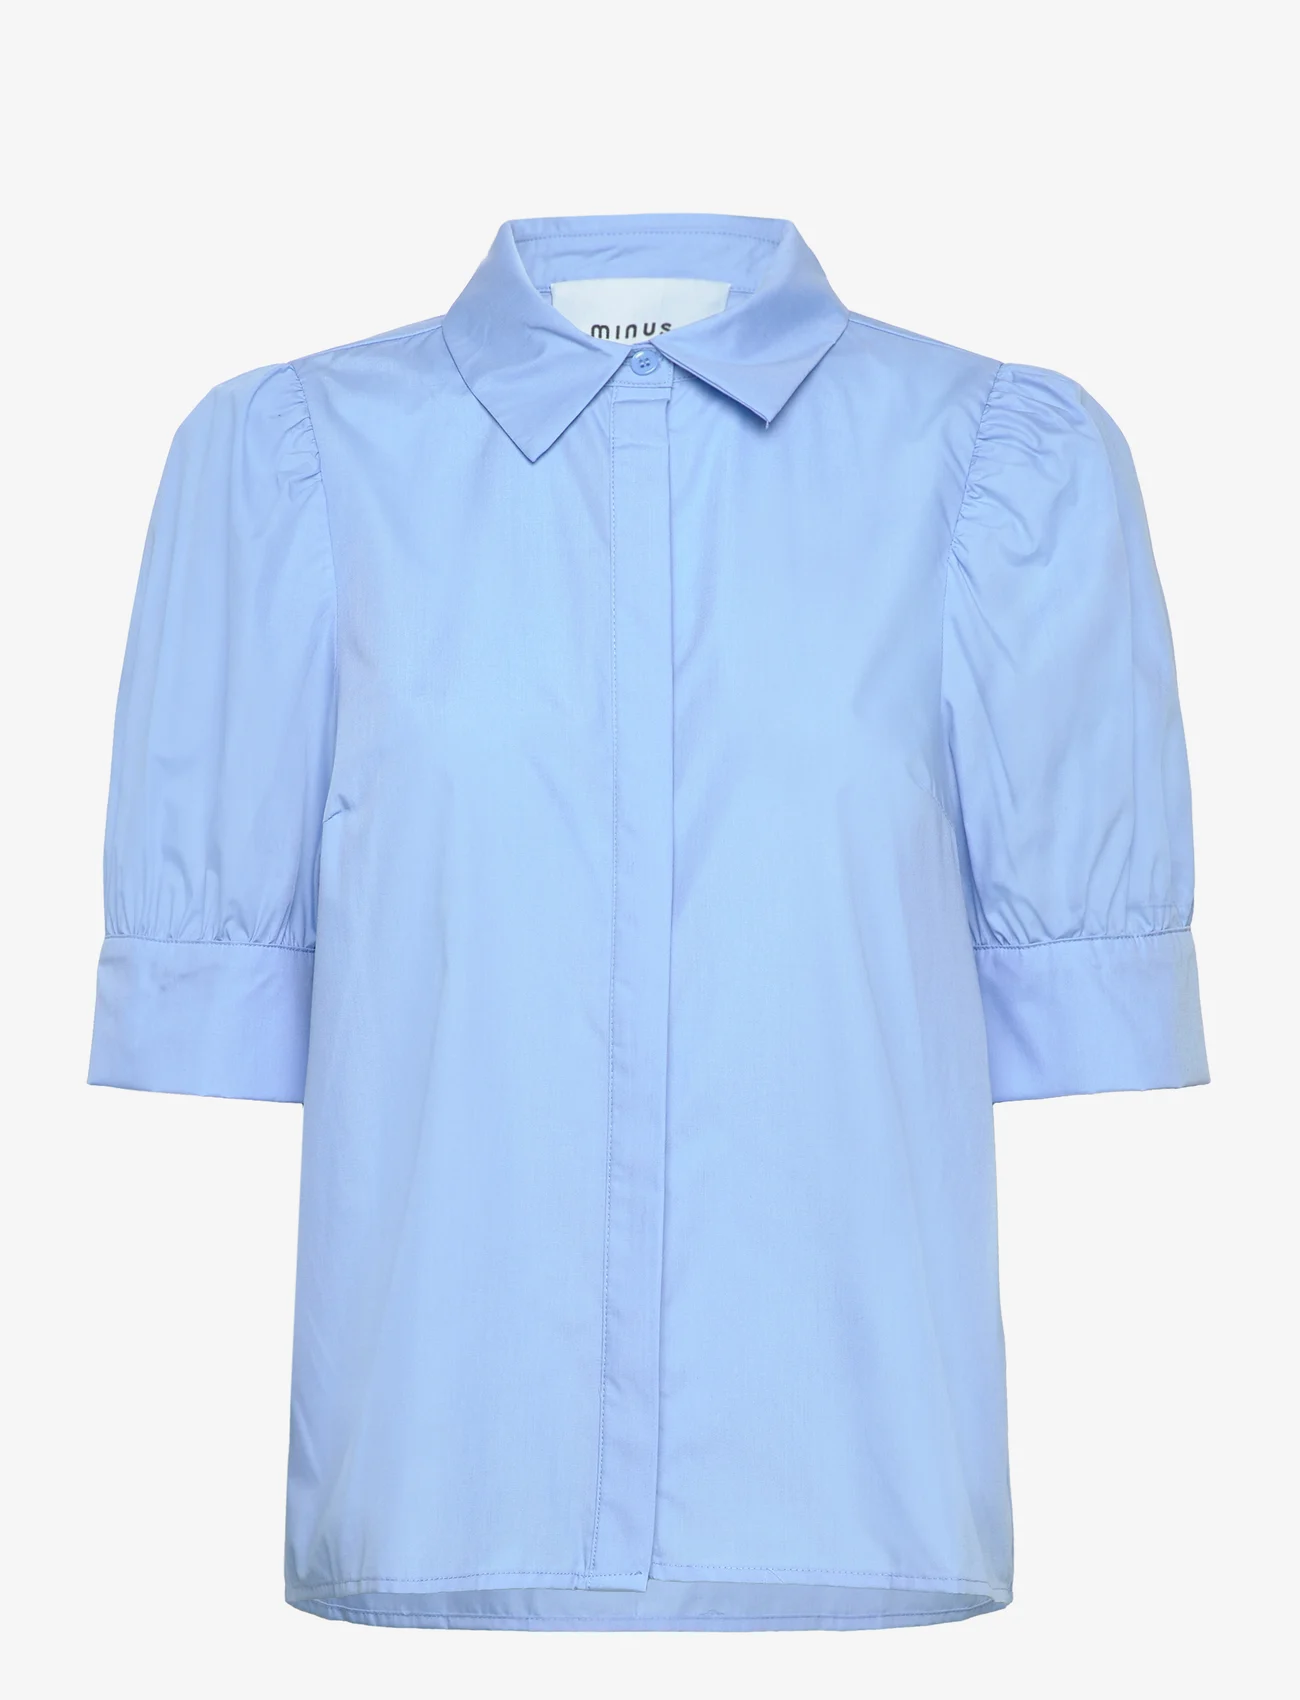 Minus - Molia Skjorte - kortermede skjorter - blue bonnet - 0